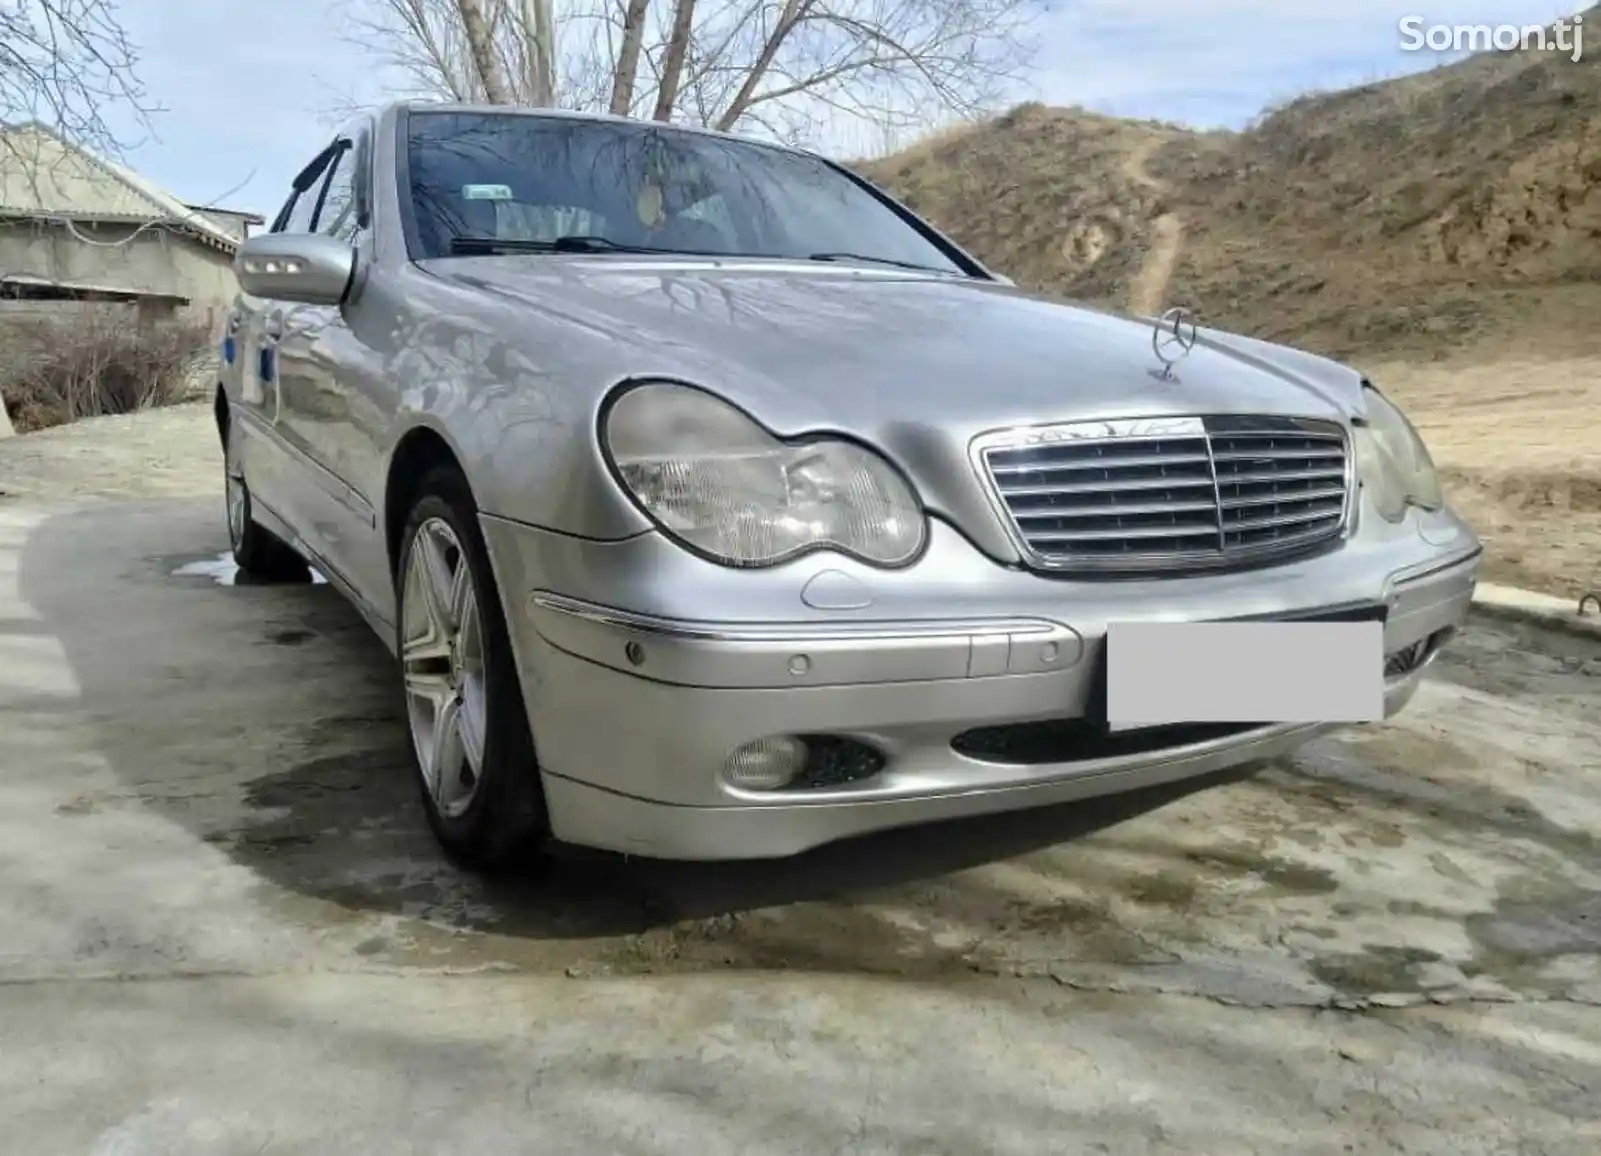 Mercedes-Benz C class, 2003-2